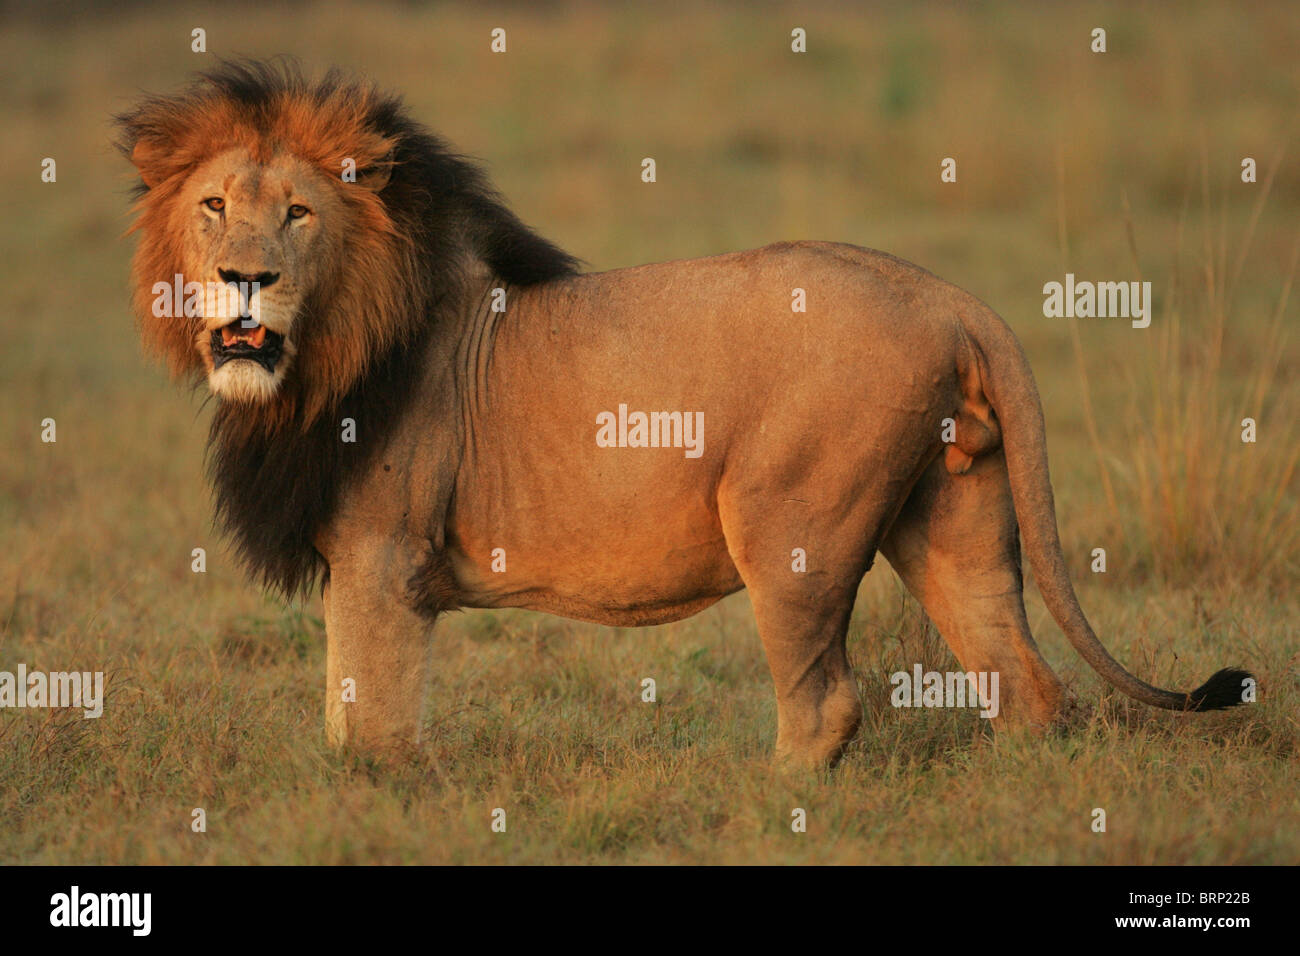 Männliche Löwen mit einem langen schwarzen Mähne und sein Maul öffnen leicht stehen allein in Trockenrasen Stockfoto